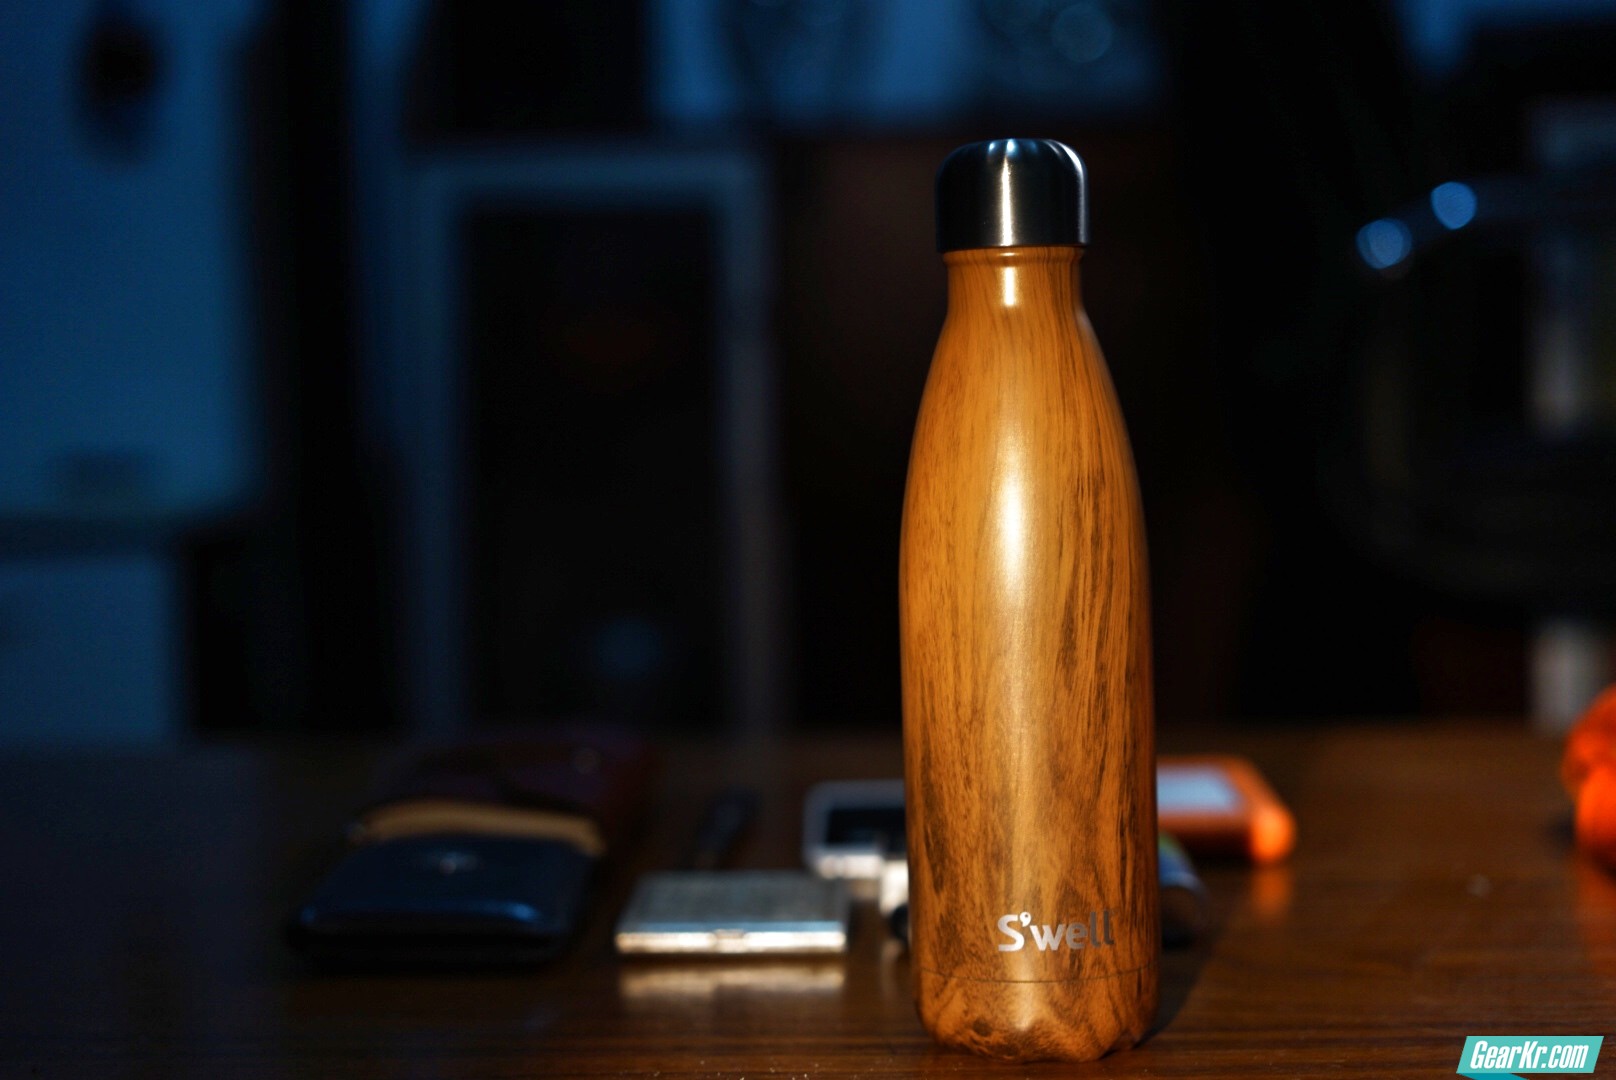 swell保温杯，瓶身流线独体造型和原木纹逼格满满不说，关键是保温保冷效果同样棒棒哒。